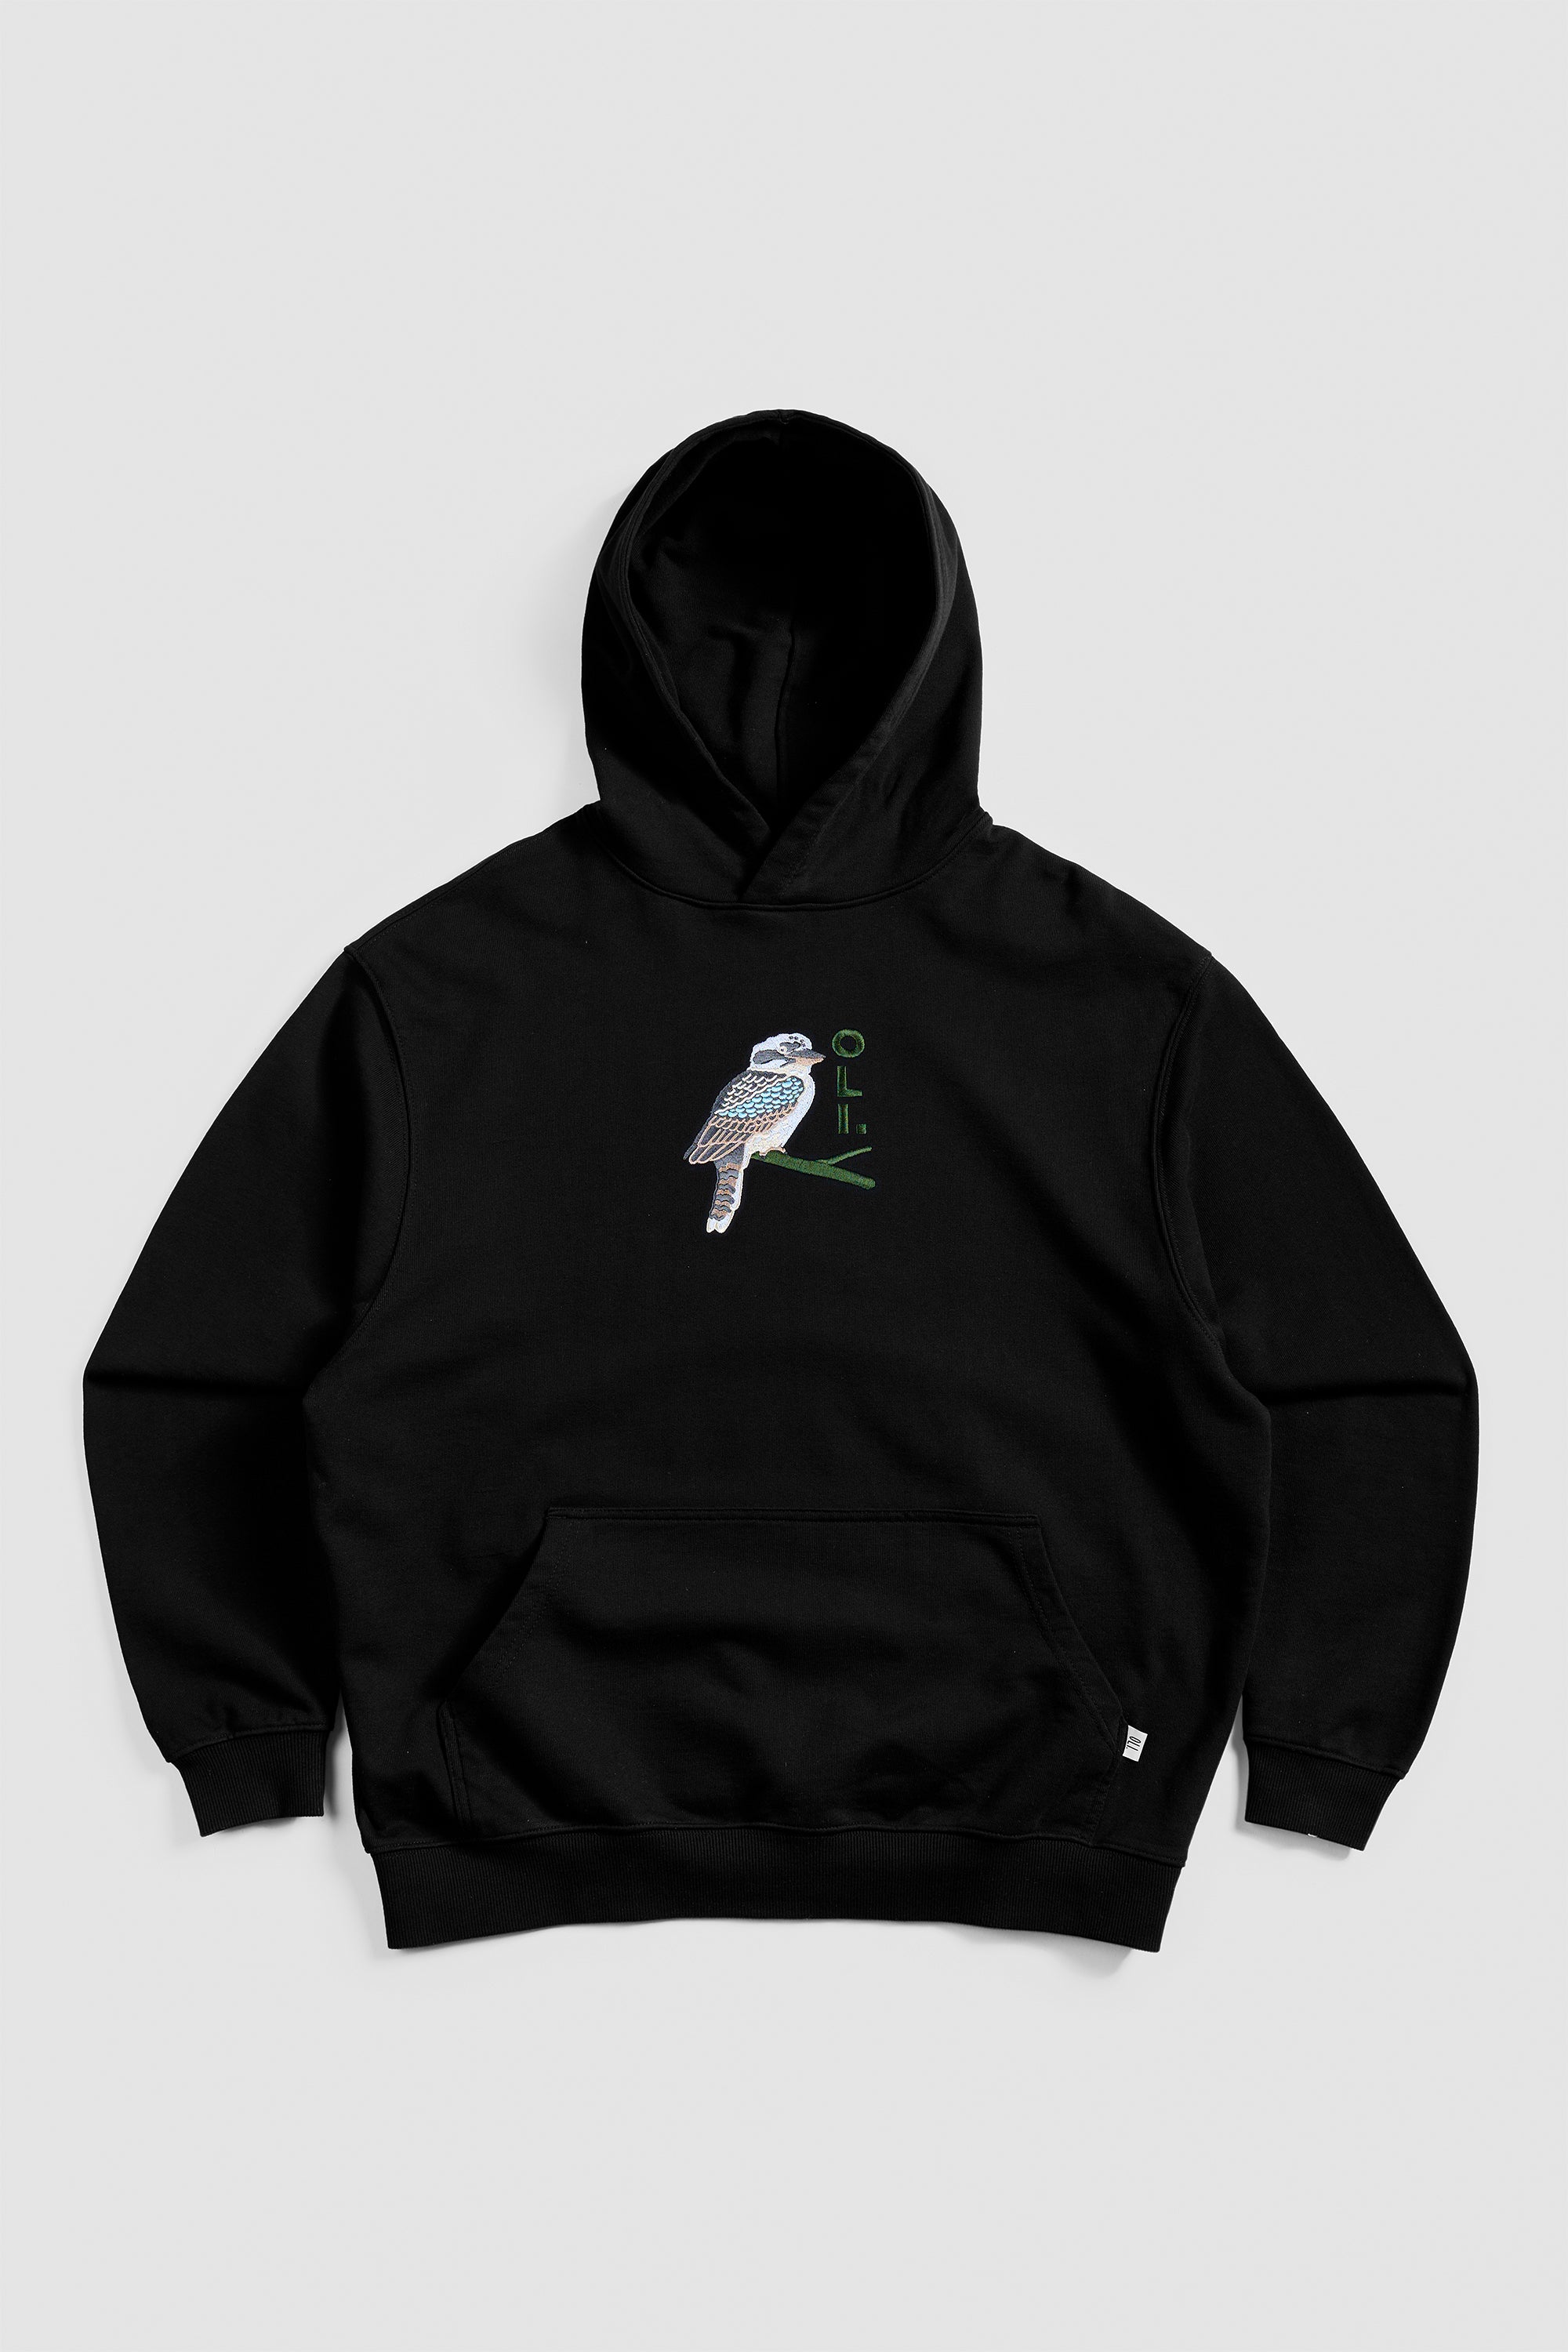 Embroidered Kookaburra Hood - Black